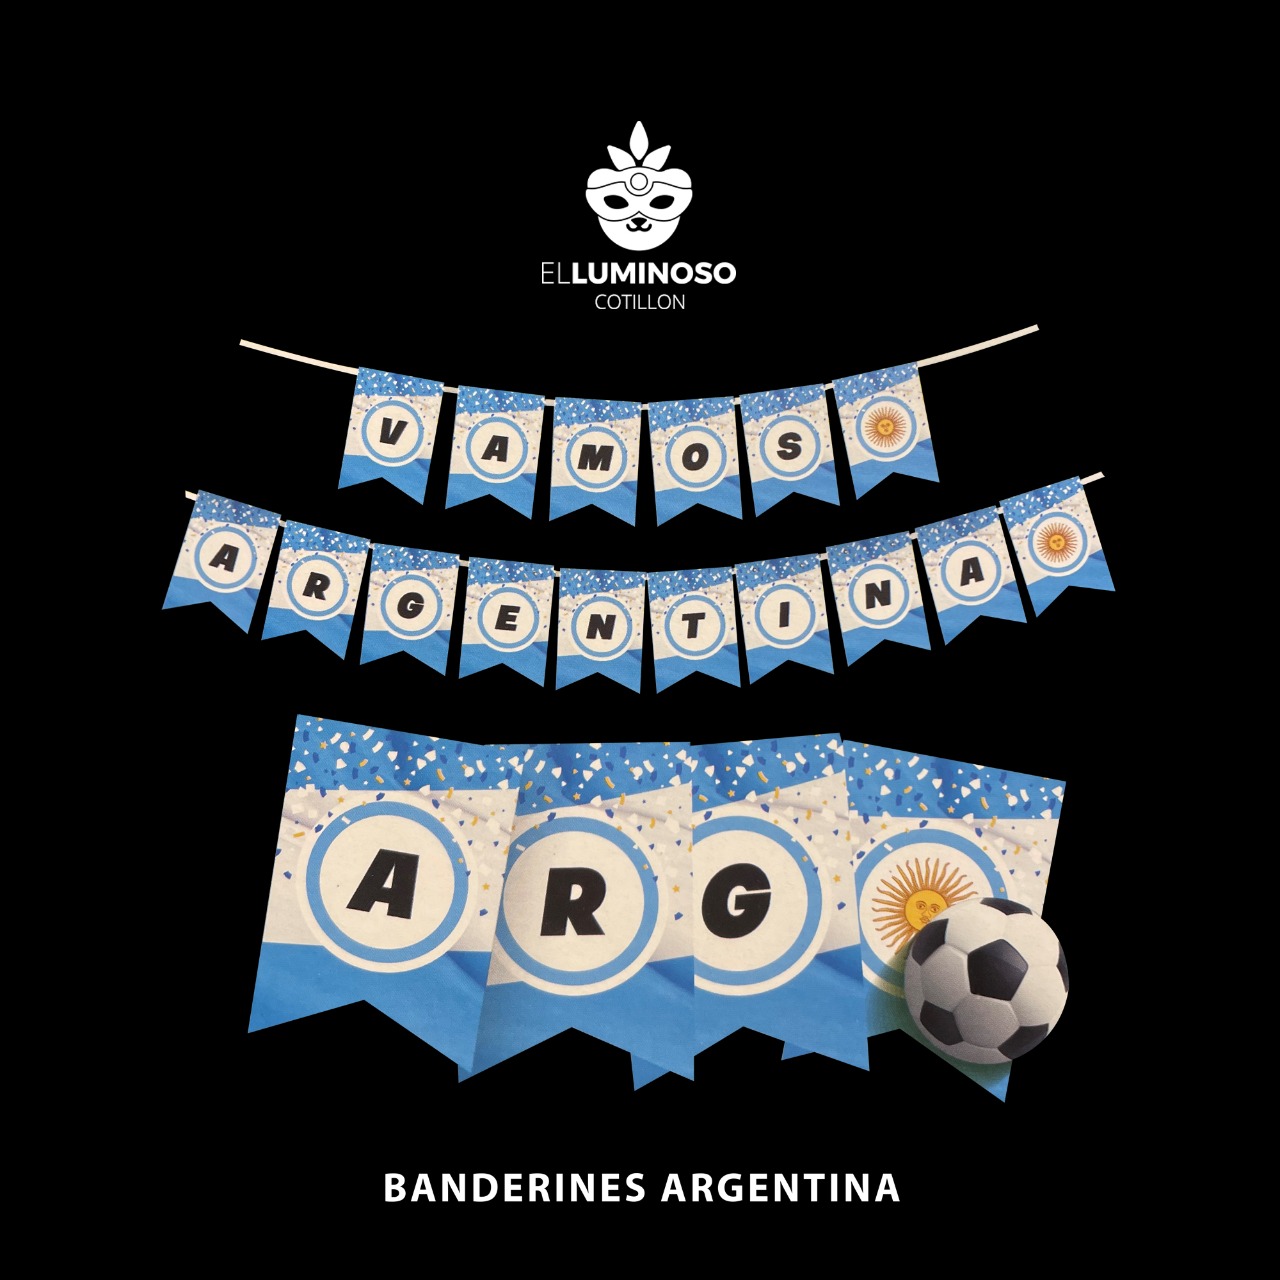 BANDERIN VAMOS ARGENTINA